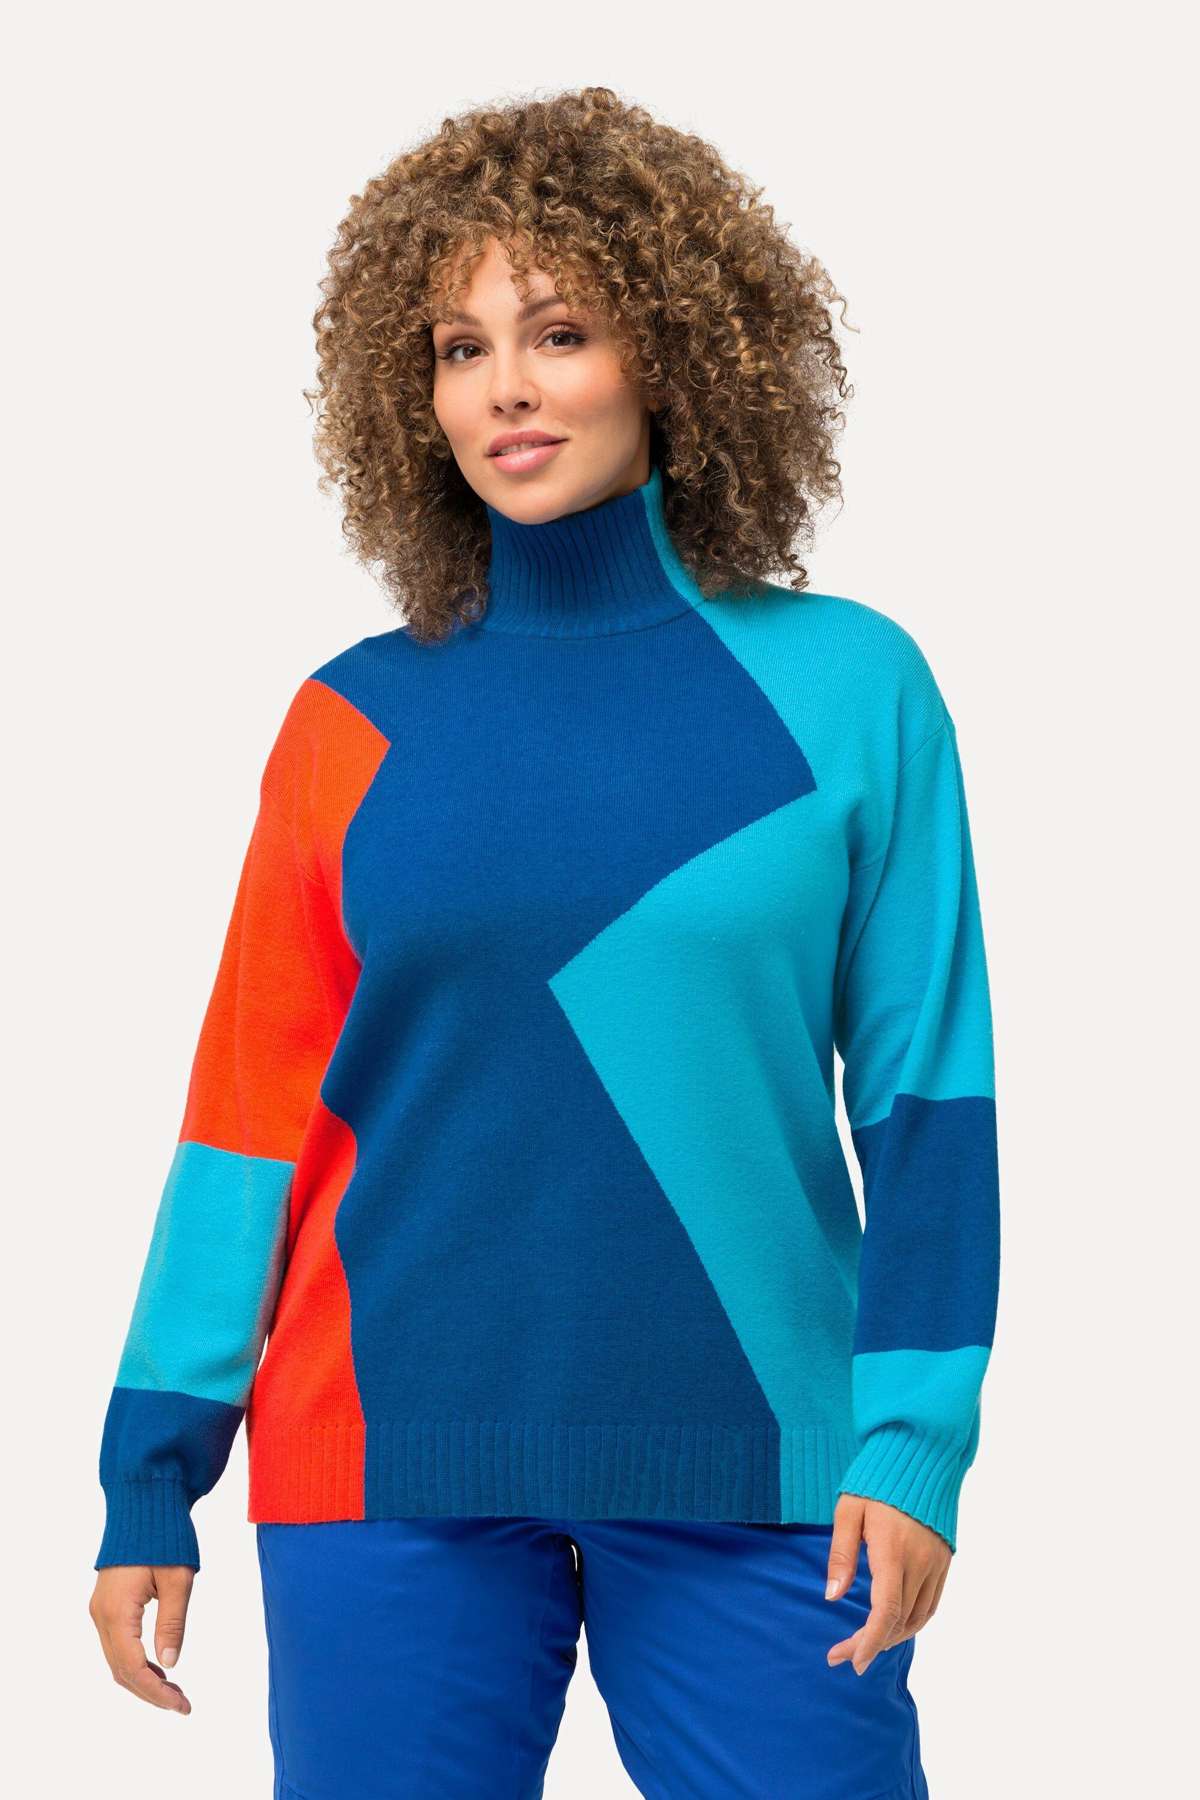 Вязаный пуловер с колор-блоком, воротник стойка, длинный рукав.